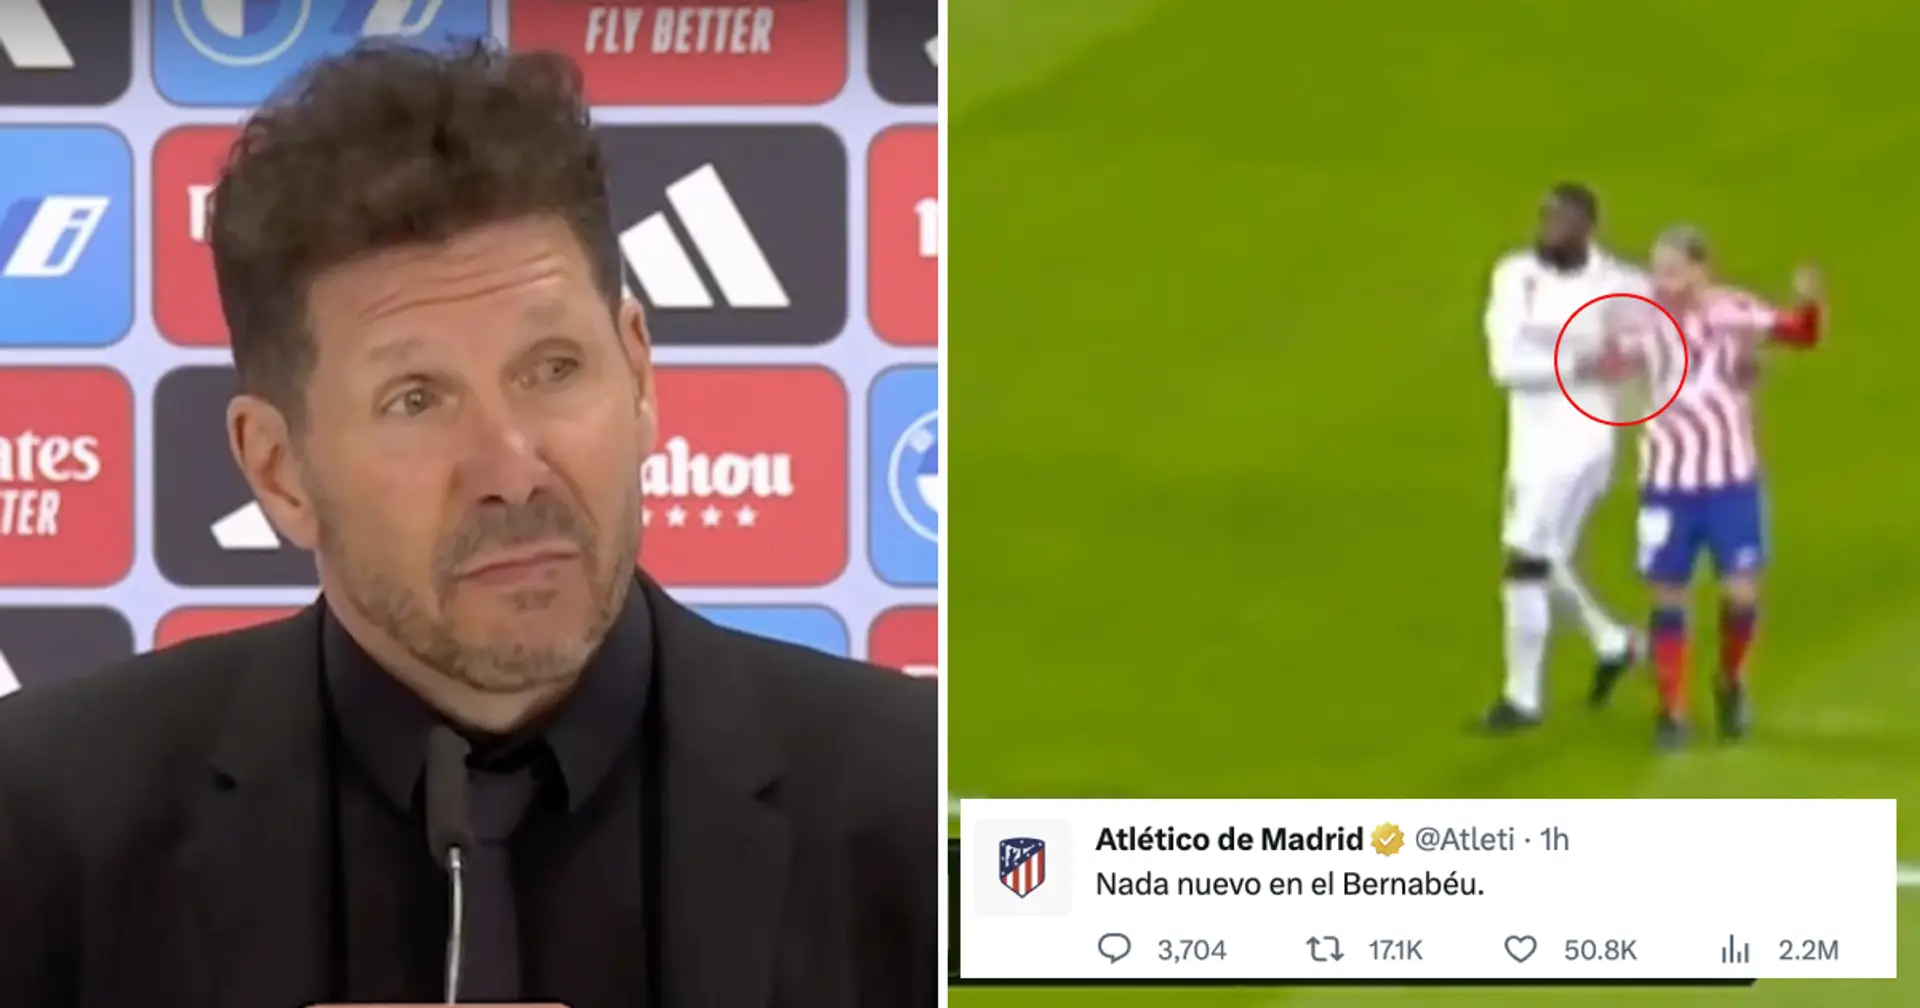 "Rien de nouveau à Bernabeu": l'Atletico se plaint du carton rouge de Jimenez et envoie un message provocateur sur Twitter